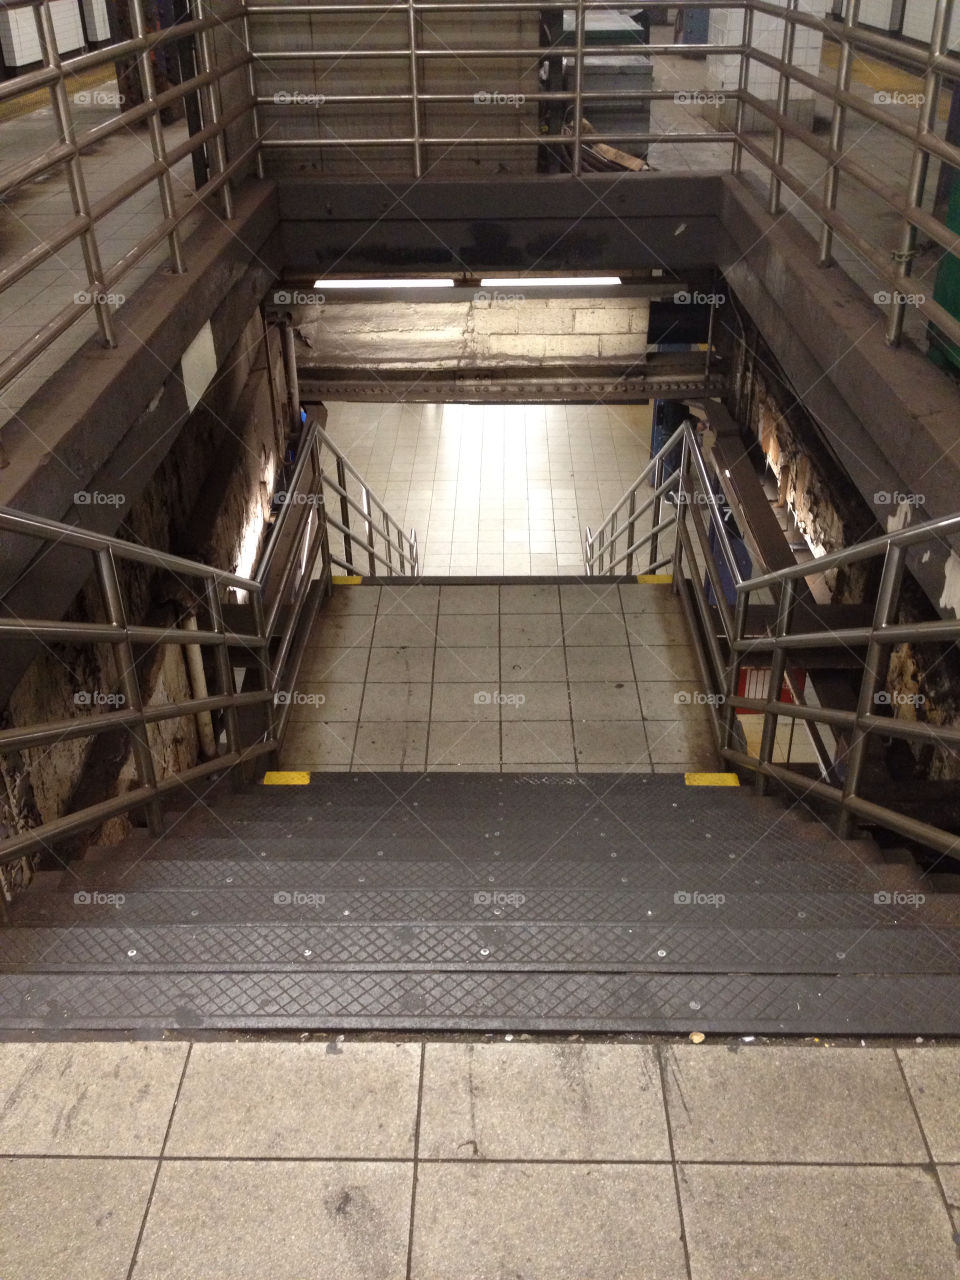 newyork subway stairs nyc by nylife